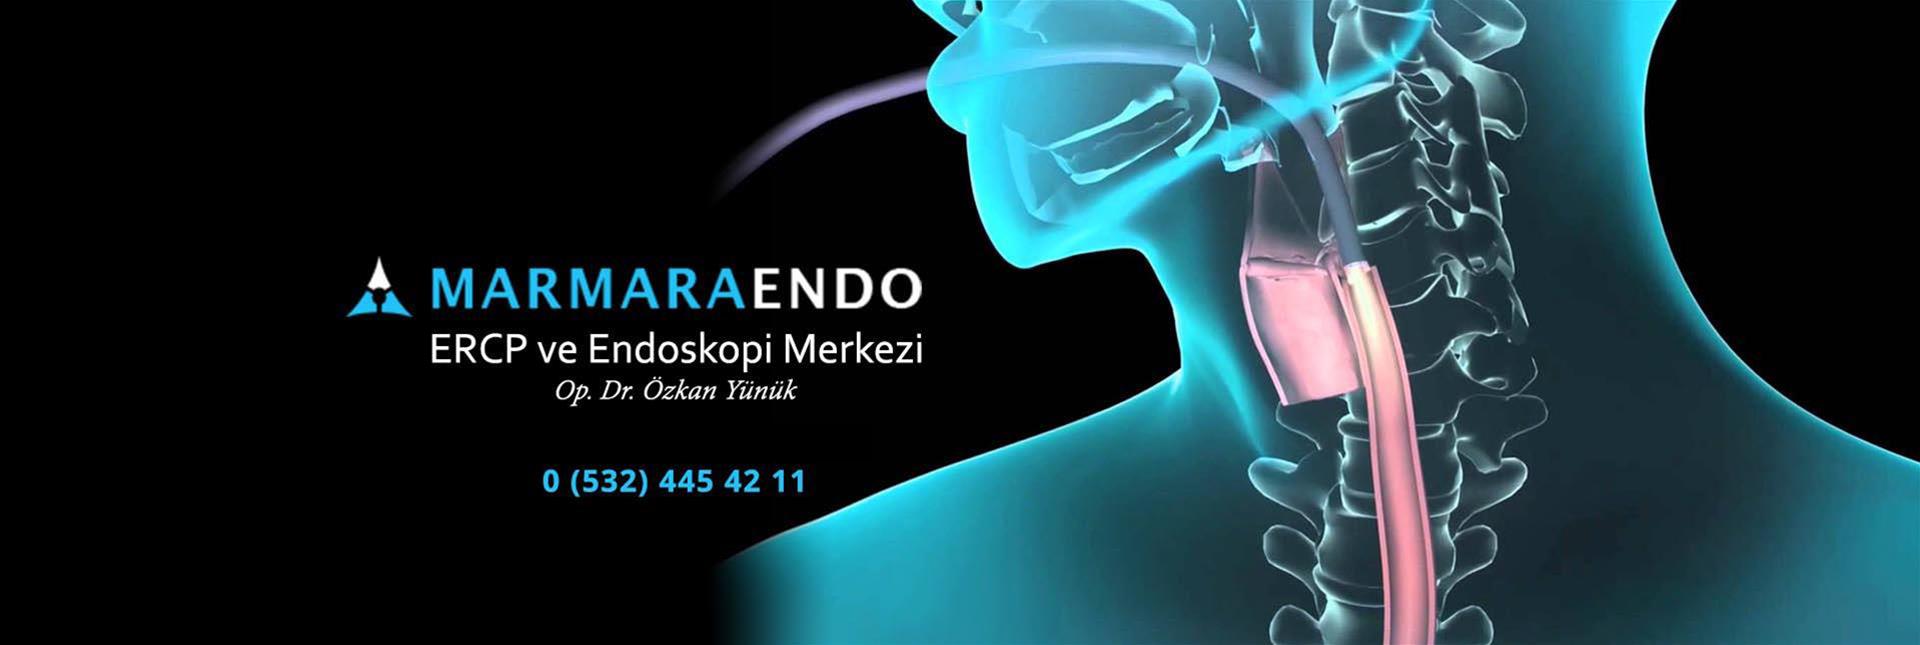 Marmara Endor Banner Resmi